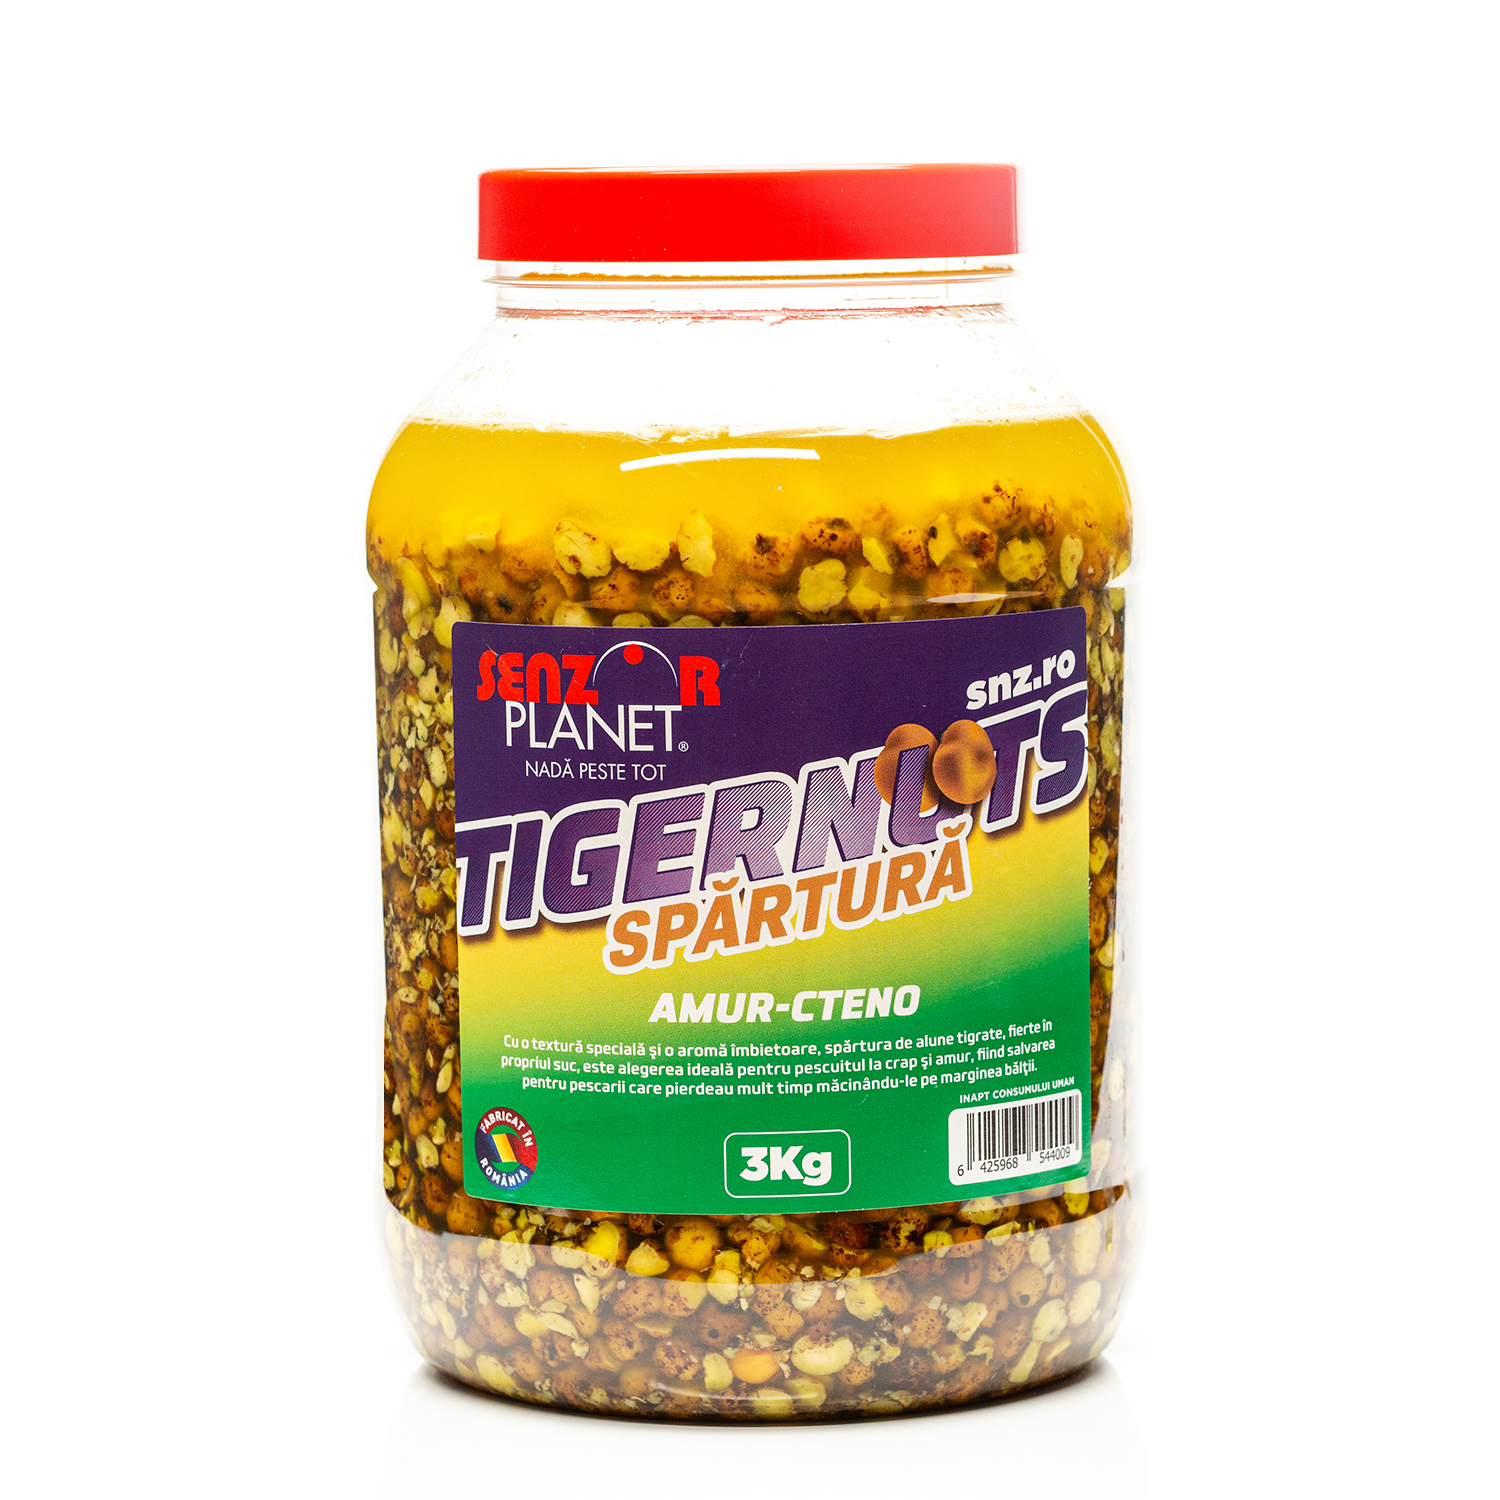 SPARTURA TIGERNUTS AMUR - CTENO 3kg
